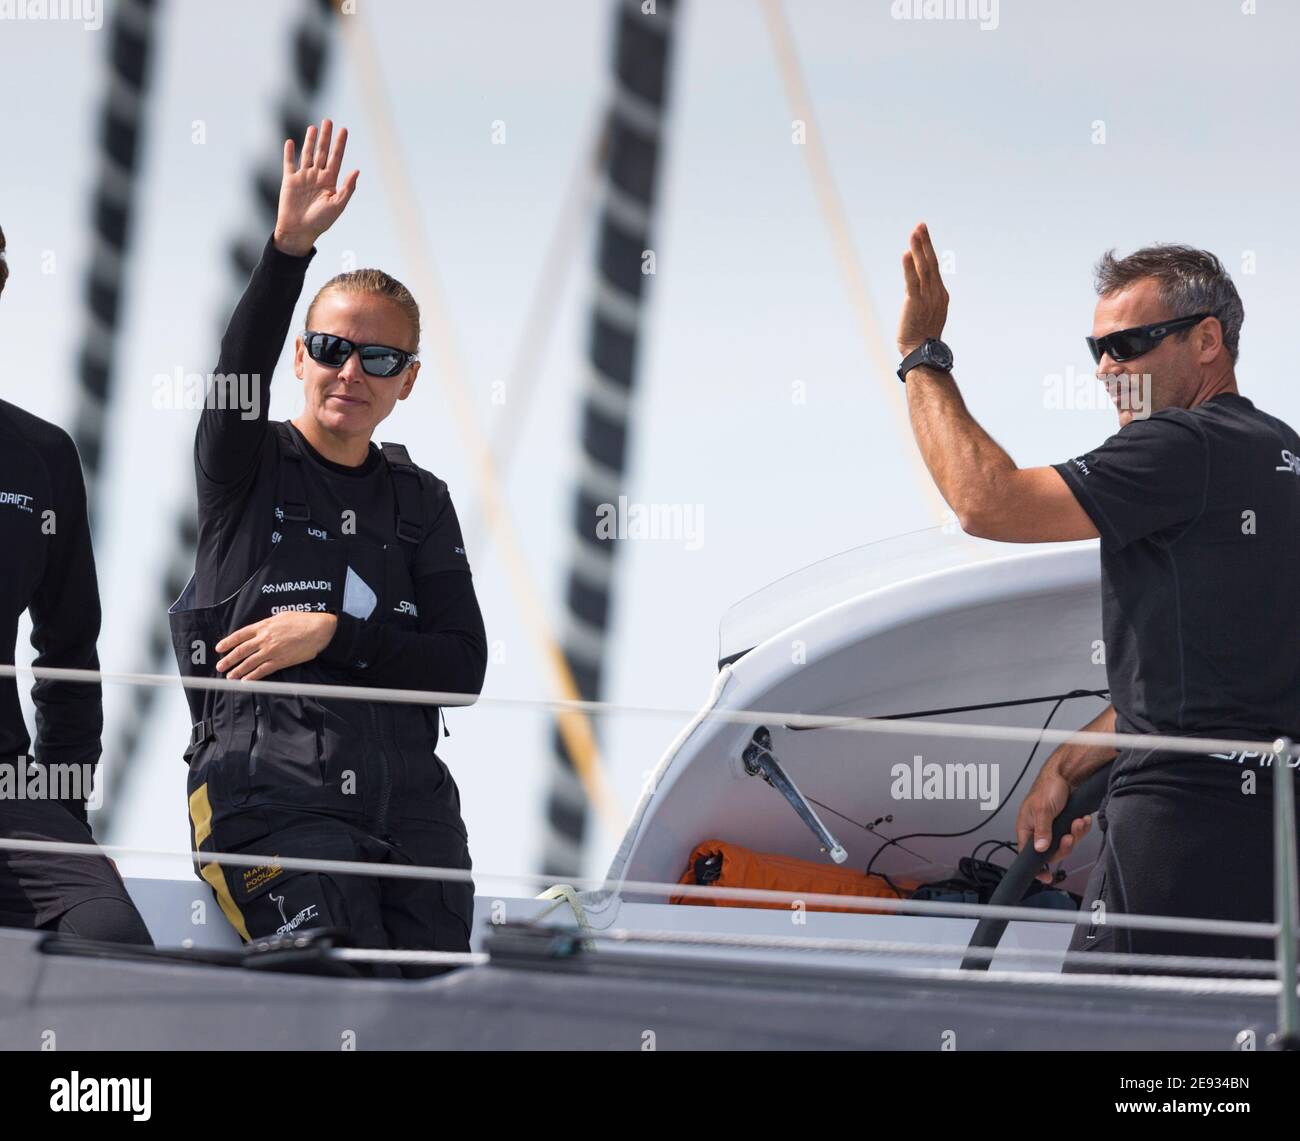 Dona Bertarelli e Yann Guichard salgono a bordo del loro multiscafo, Spindrift 2, all'inizio del 90° anniversario della Rolex Fastnet Race sul Solent. Immagine Foto Stock